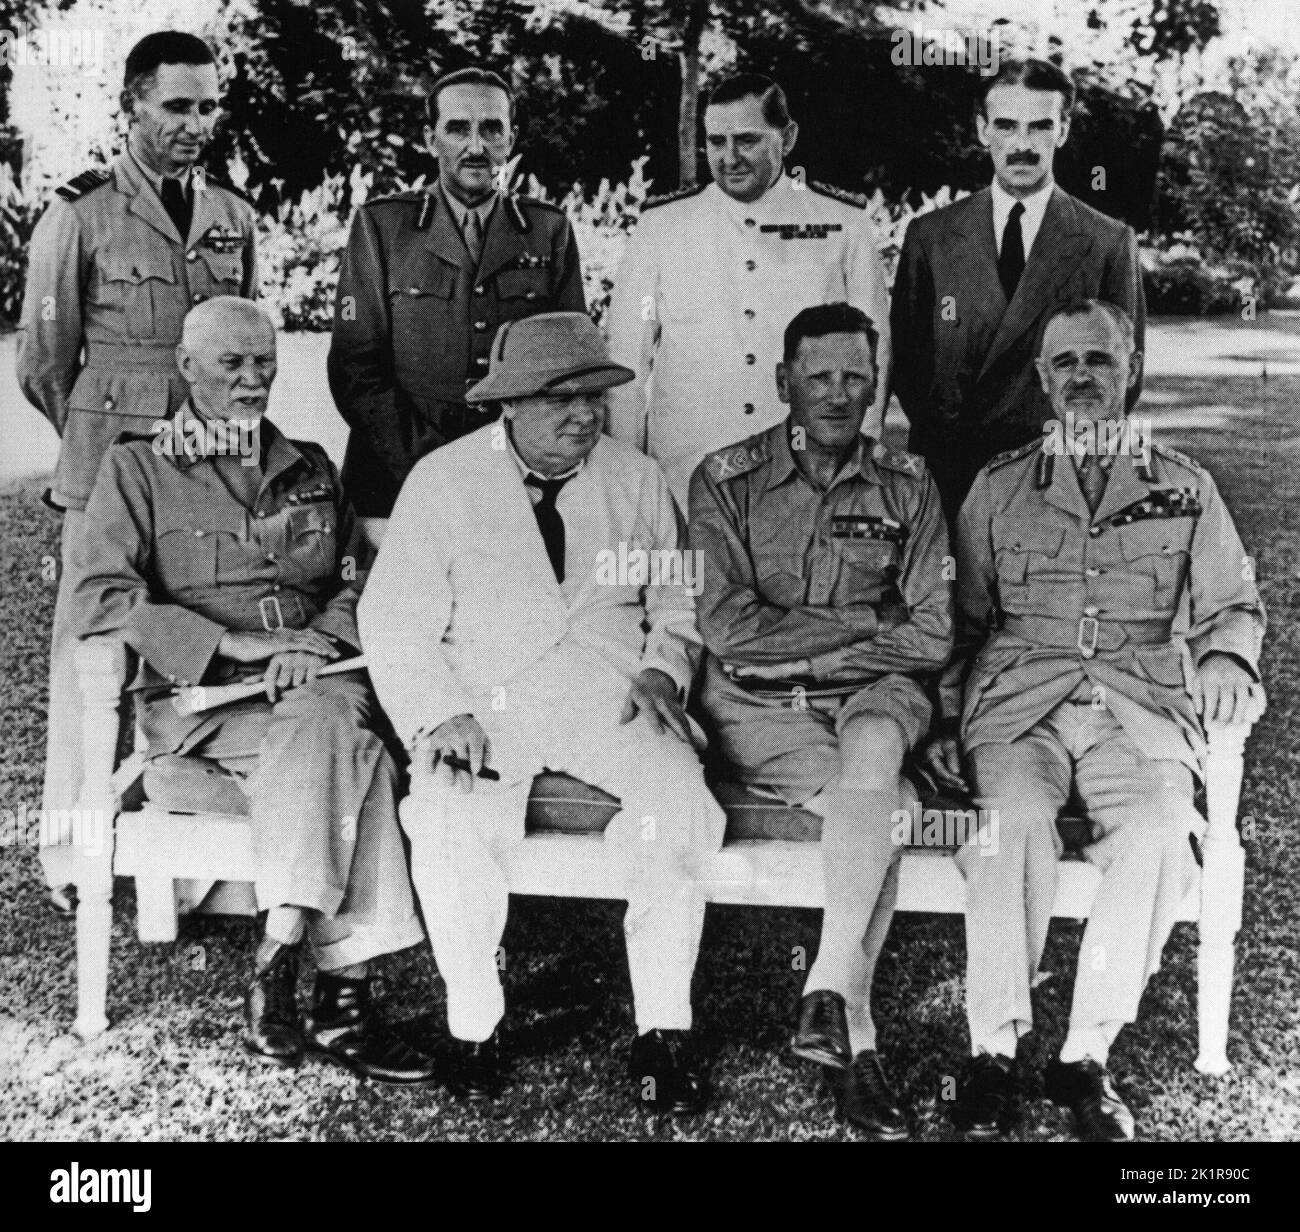 Winston Churchill bei der britischen Botschaft, 1942 Kairo. Oben: Tedder, Brooke, Harwood und Casey. Unten: Smuts, WSC, Auchinleck und Wavell. Stockfoto